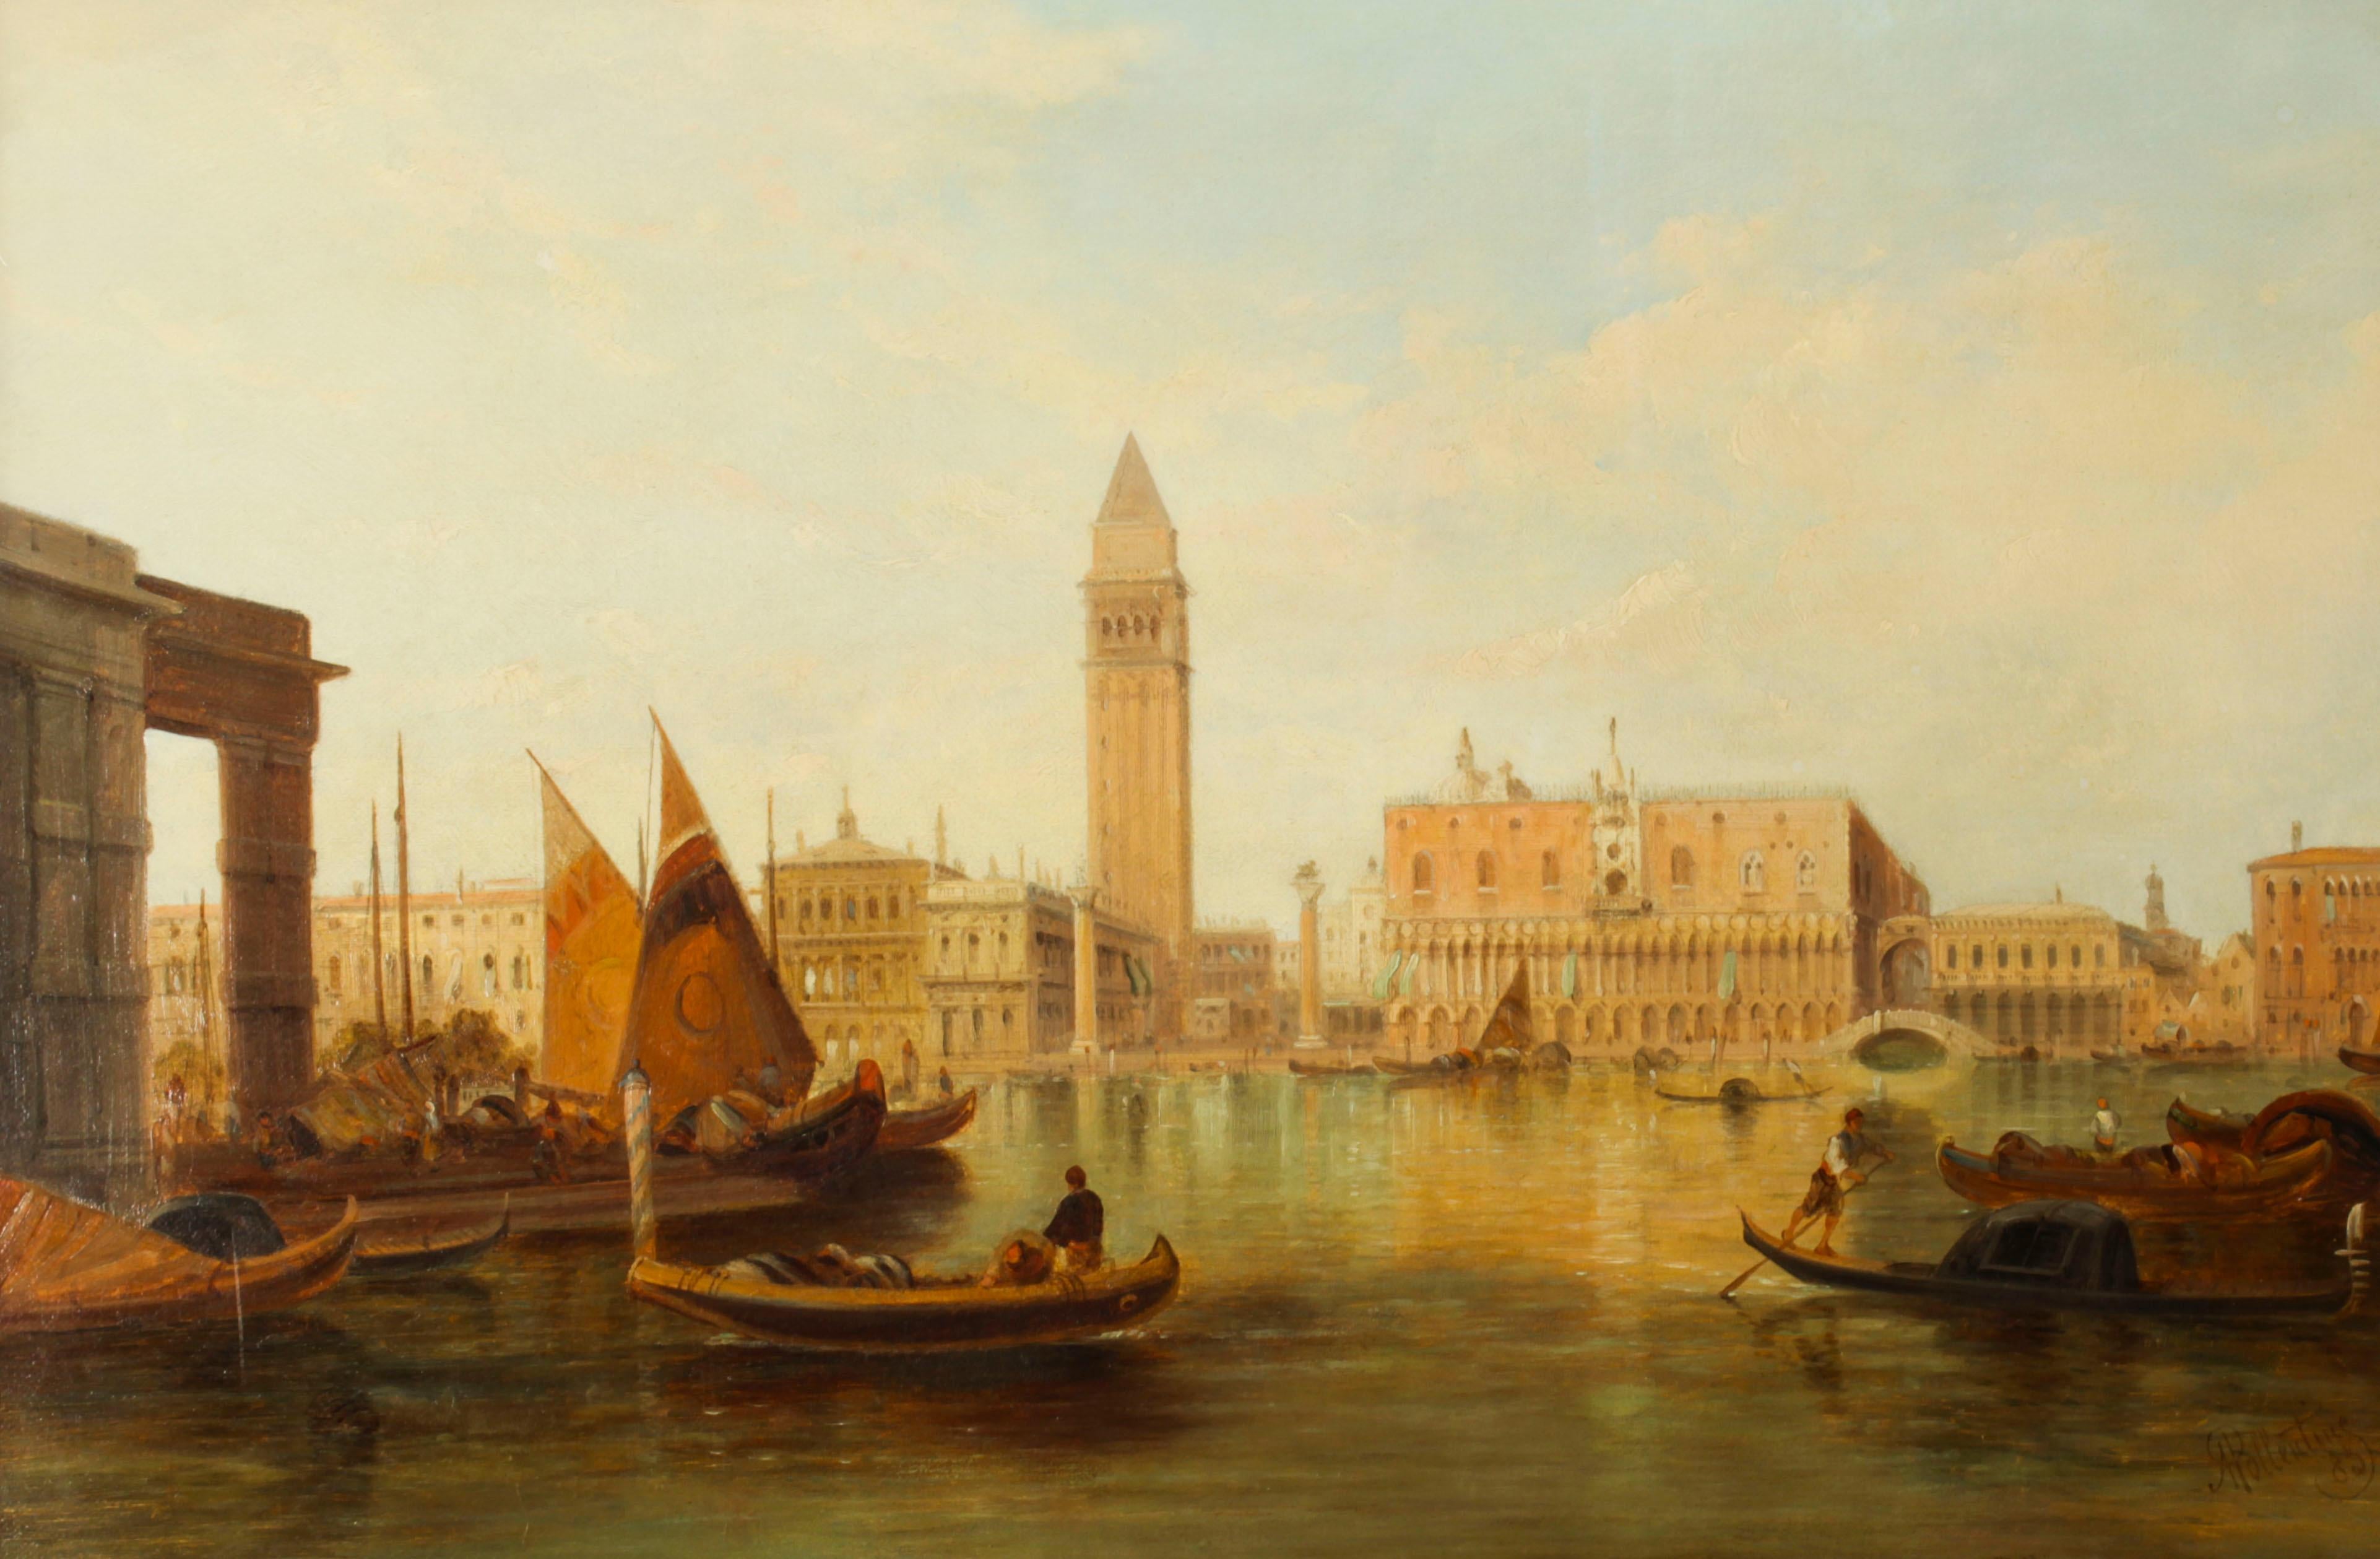 Dies ist ein schönes Öl auf Leinwand Gemälde der Blick auf den Herzogspalast und den Eingang zum Markusplatz Kanal in Venedig von dem berühmten britischen Künstler Alfred Pollentine (1836-1890) und signiert unten rechts 